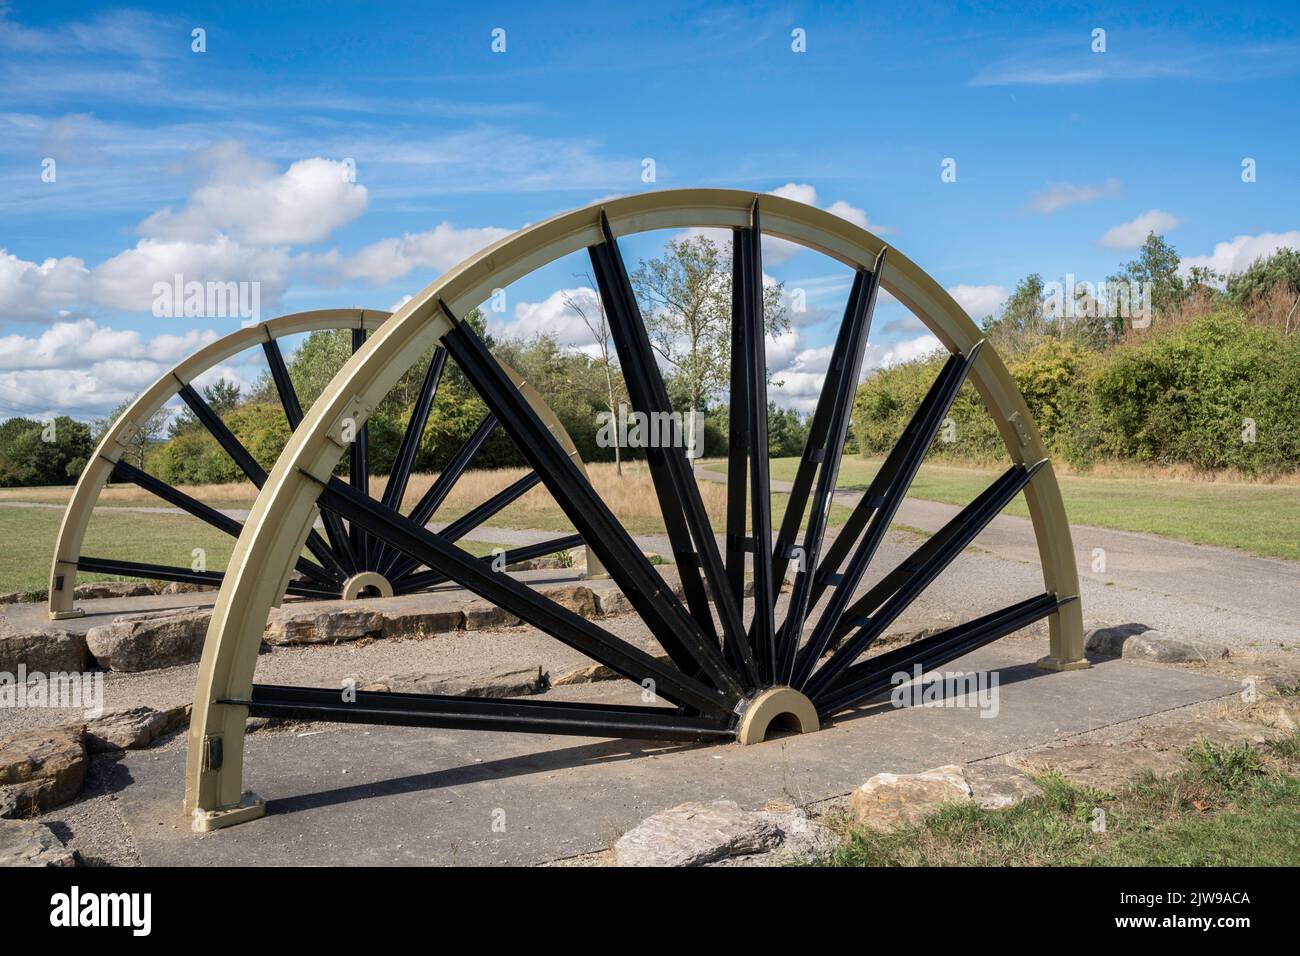 Les anciennes roues de fosse forment une partie du jardin Miner's Memorial à Herrington Country Park, Sunderland, Angleterre, Royaume-Uni Banque D'Images